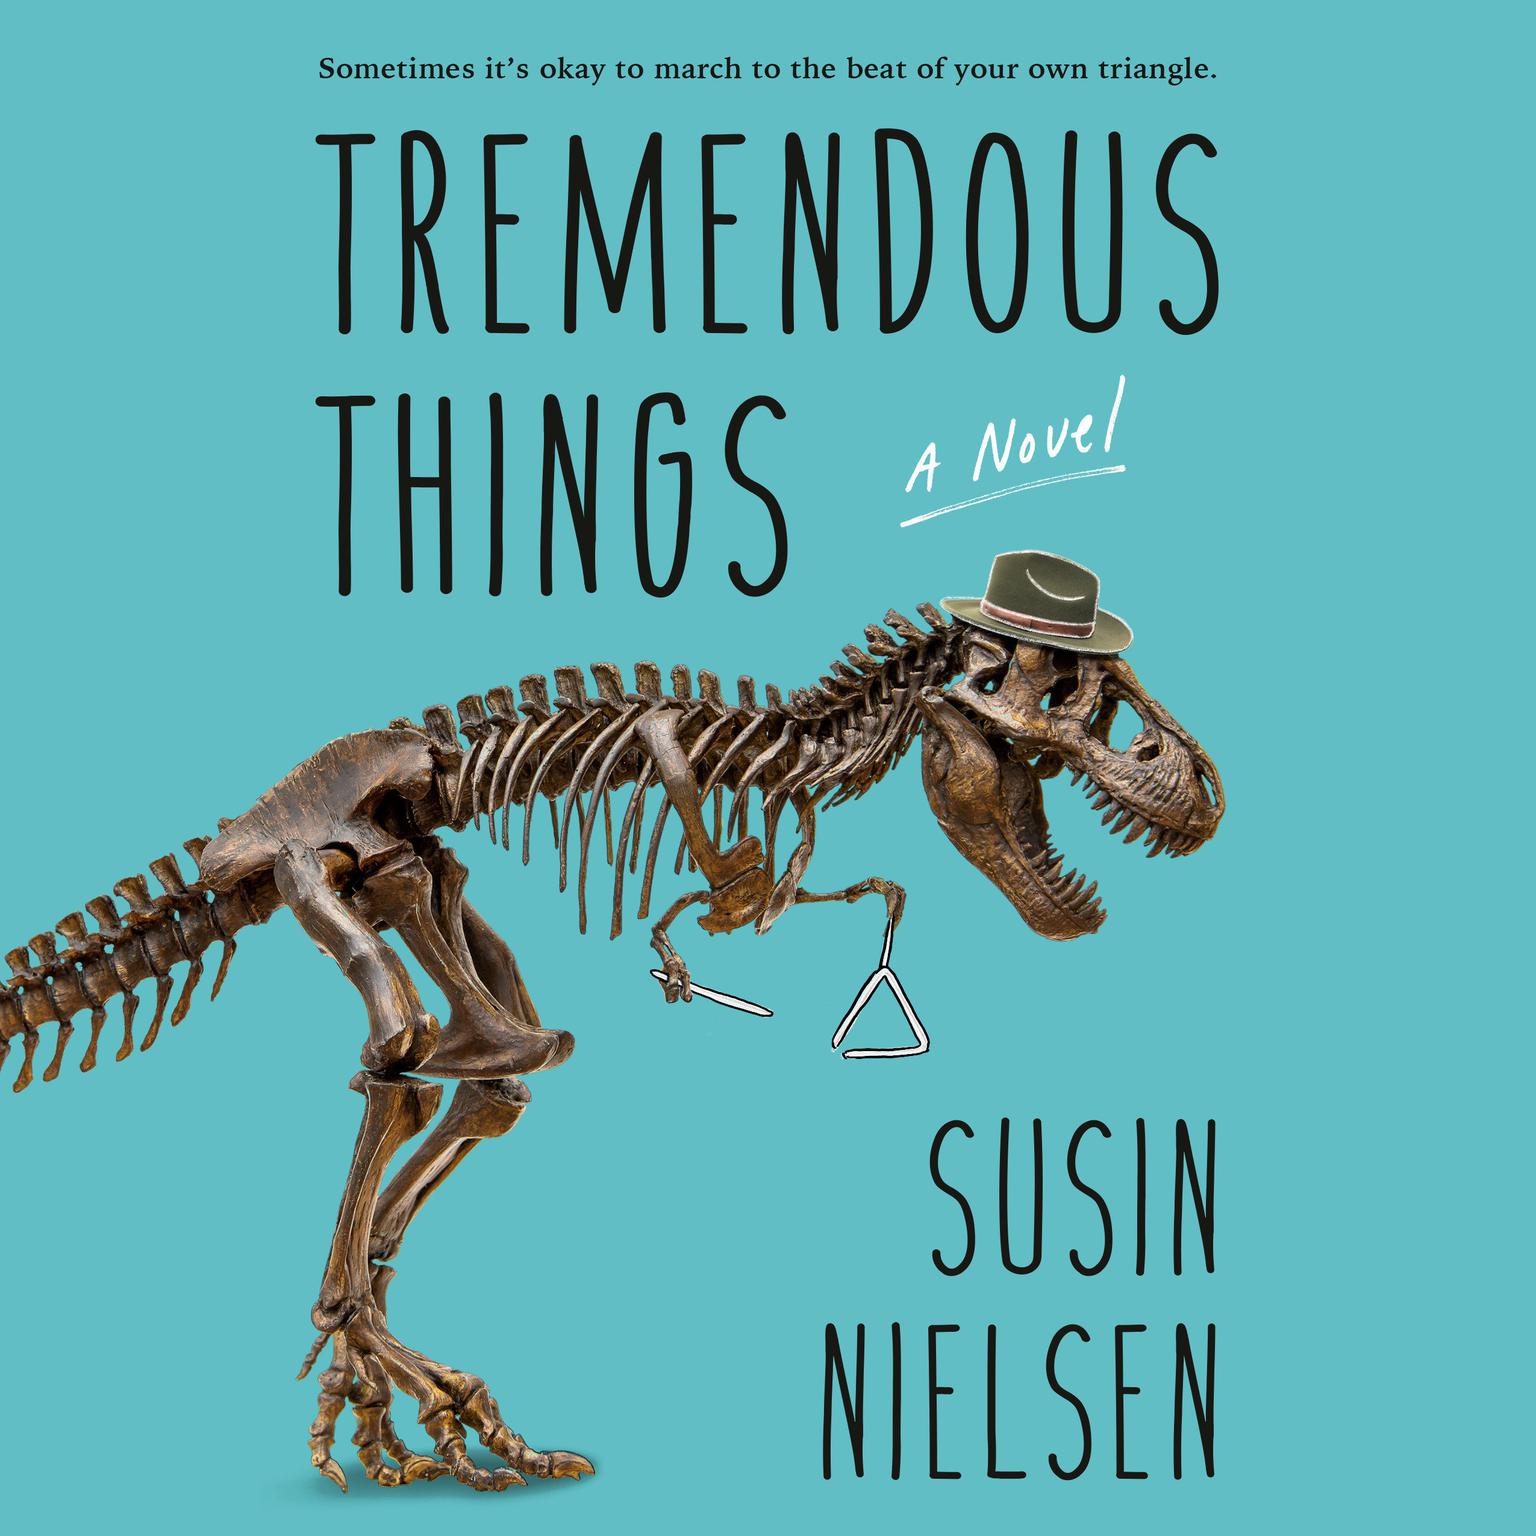 Tremendous Things Audiobook, by Susin Nielsen